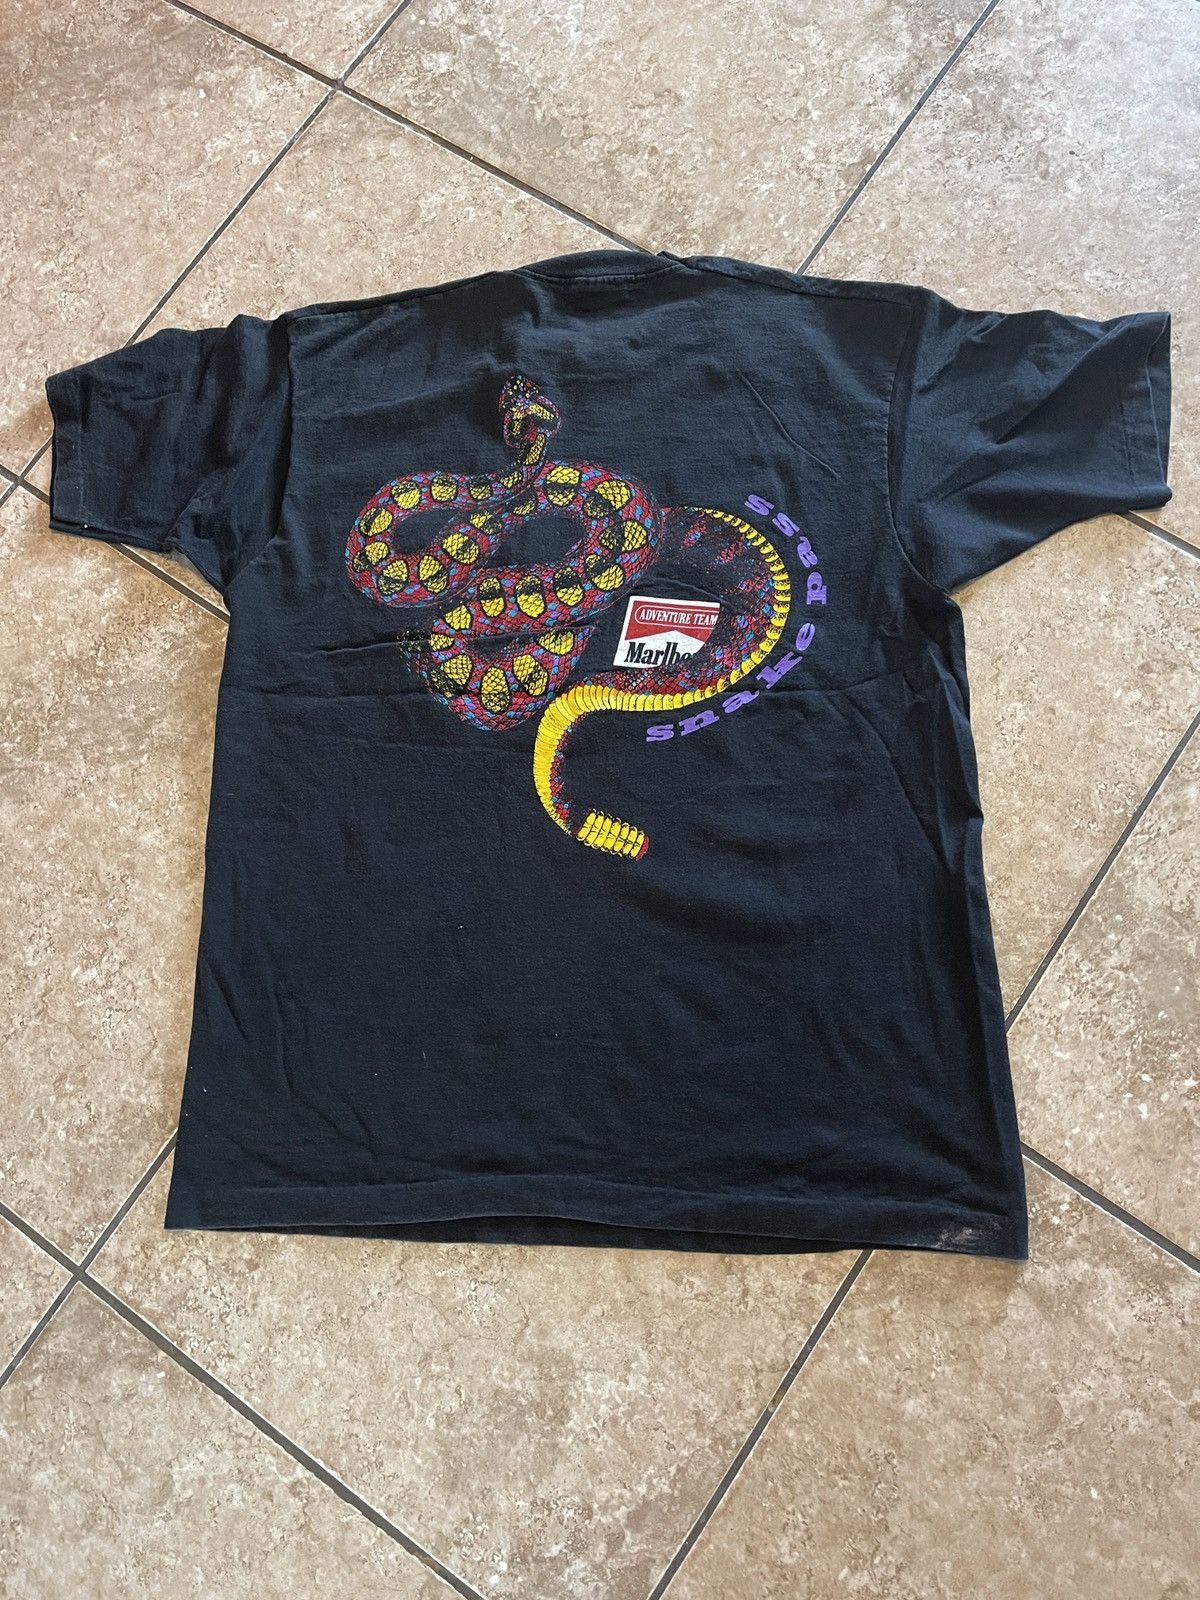 Marlboro Snake Pass Shirt | Grailed